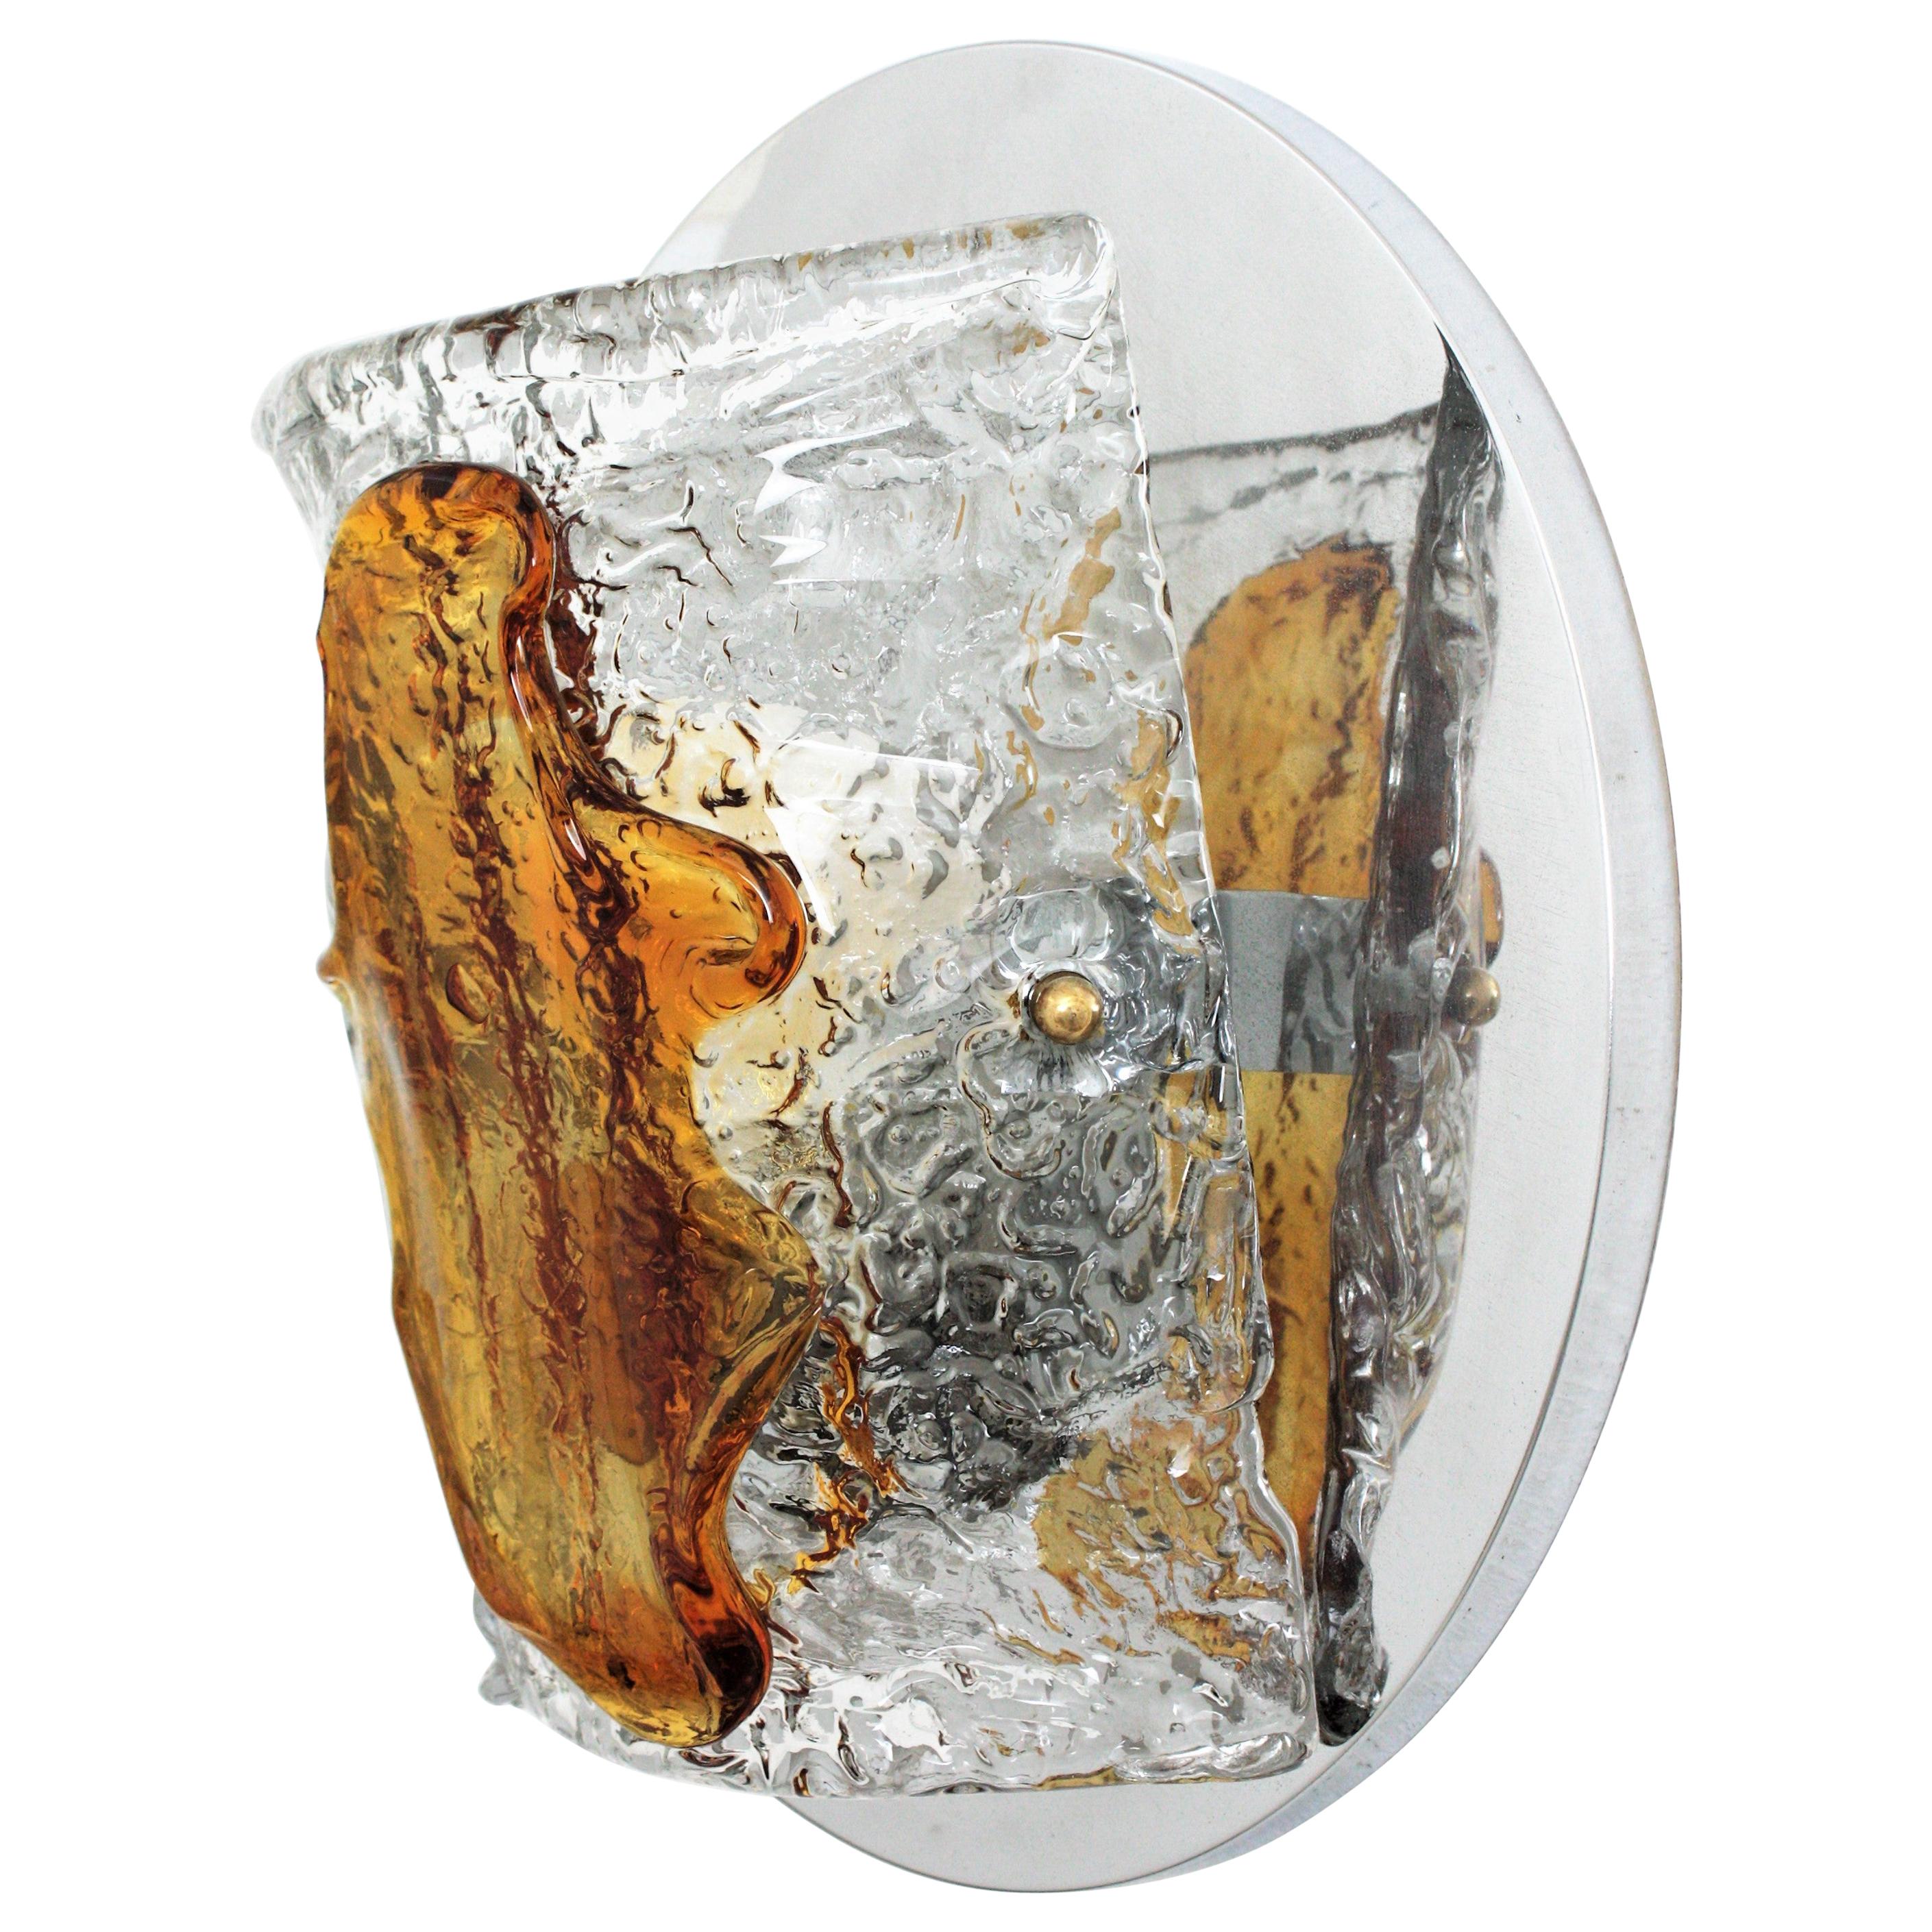 Eleganter Wandleuchter aus mundgeblasenem bernsteinfarbenem und klarem Muranoglas von Mazzega, Italien, 1960er Jahre.
Diese schöne Wandleuchte besteht aus einer runden, verchromten Stahlrückwand, die einen halbzylindrischen Glasschirm aus